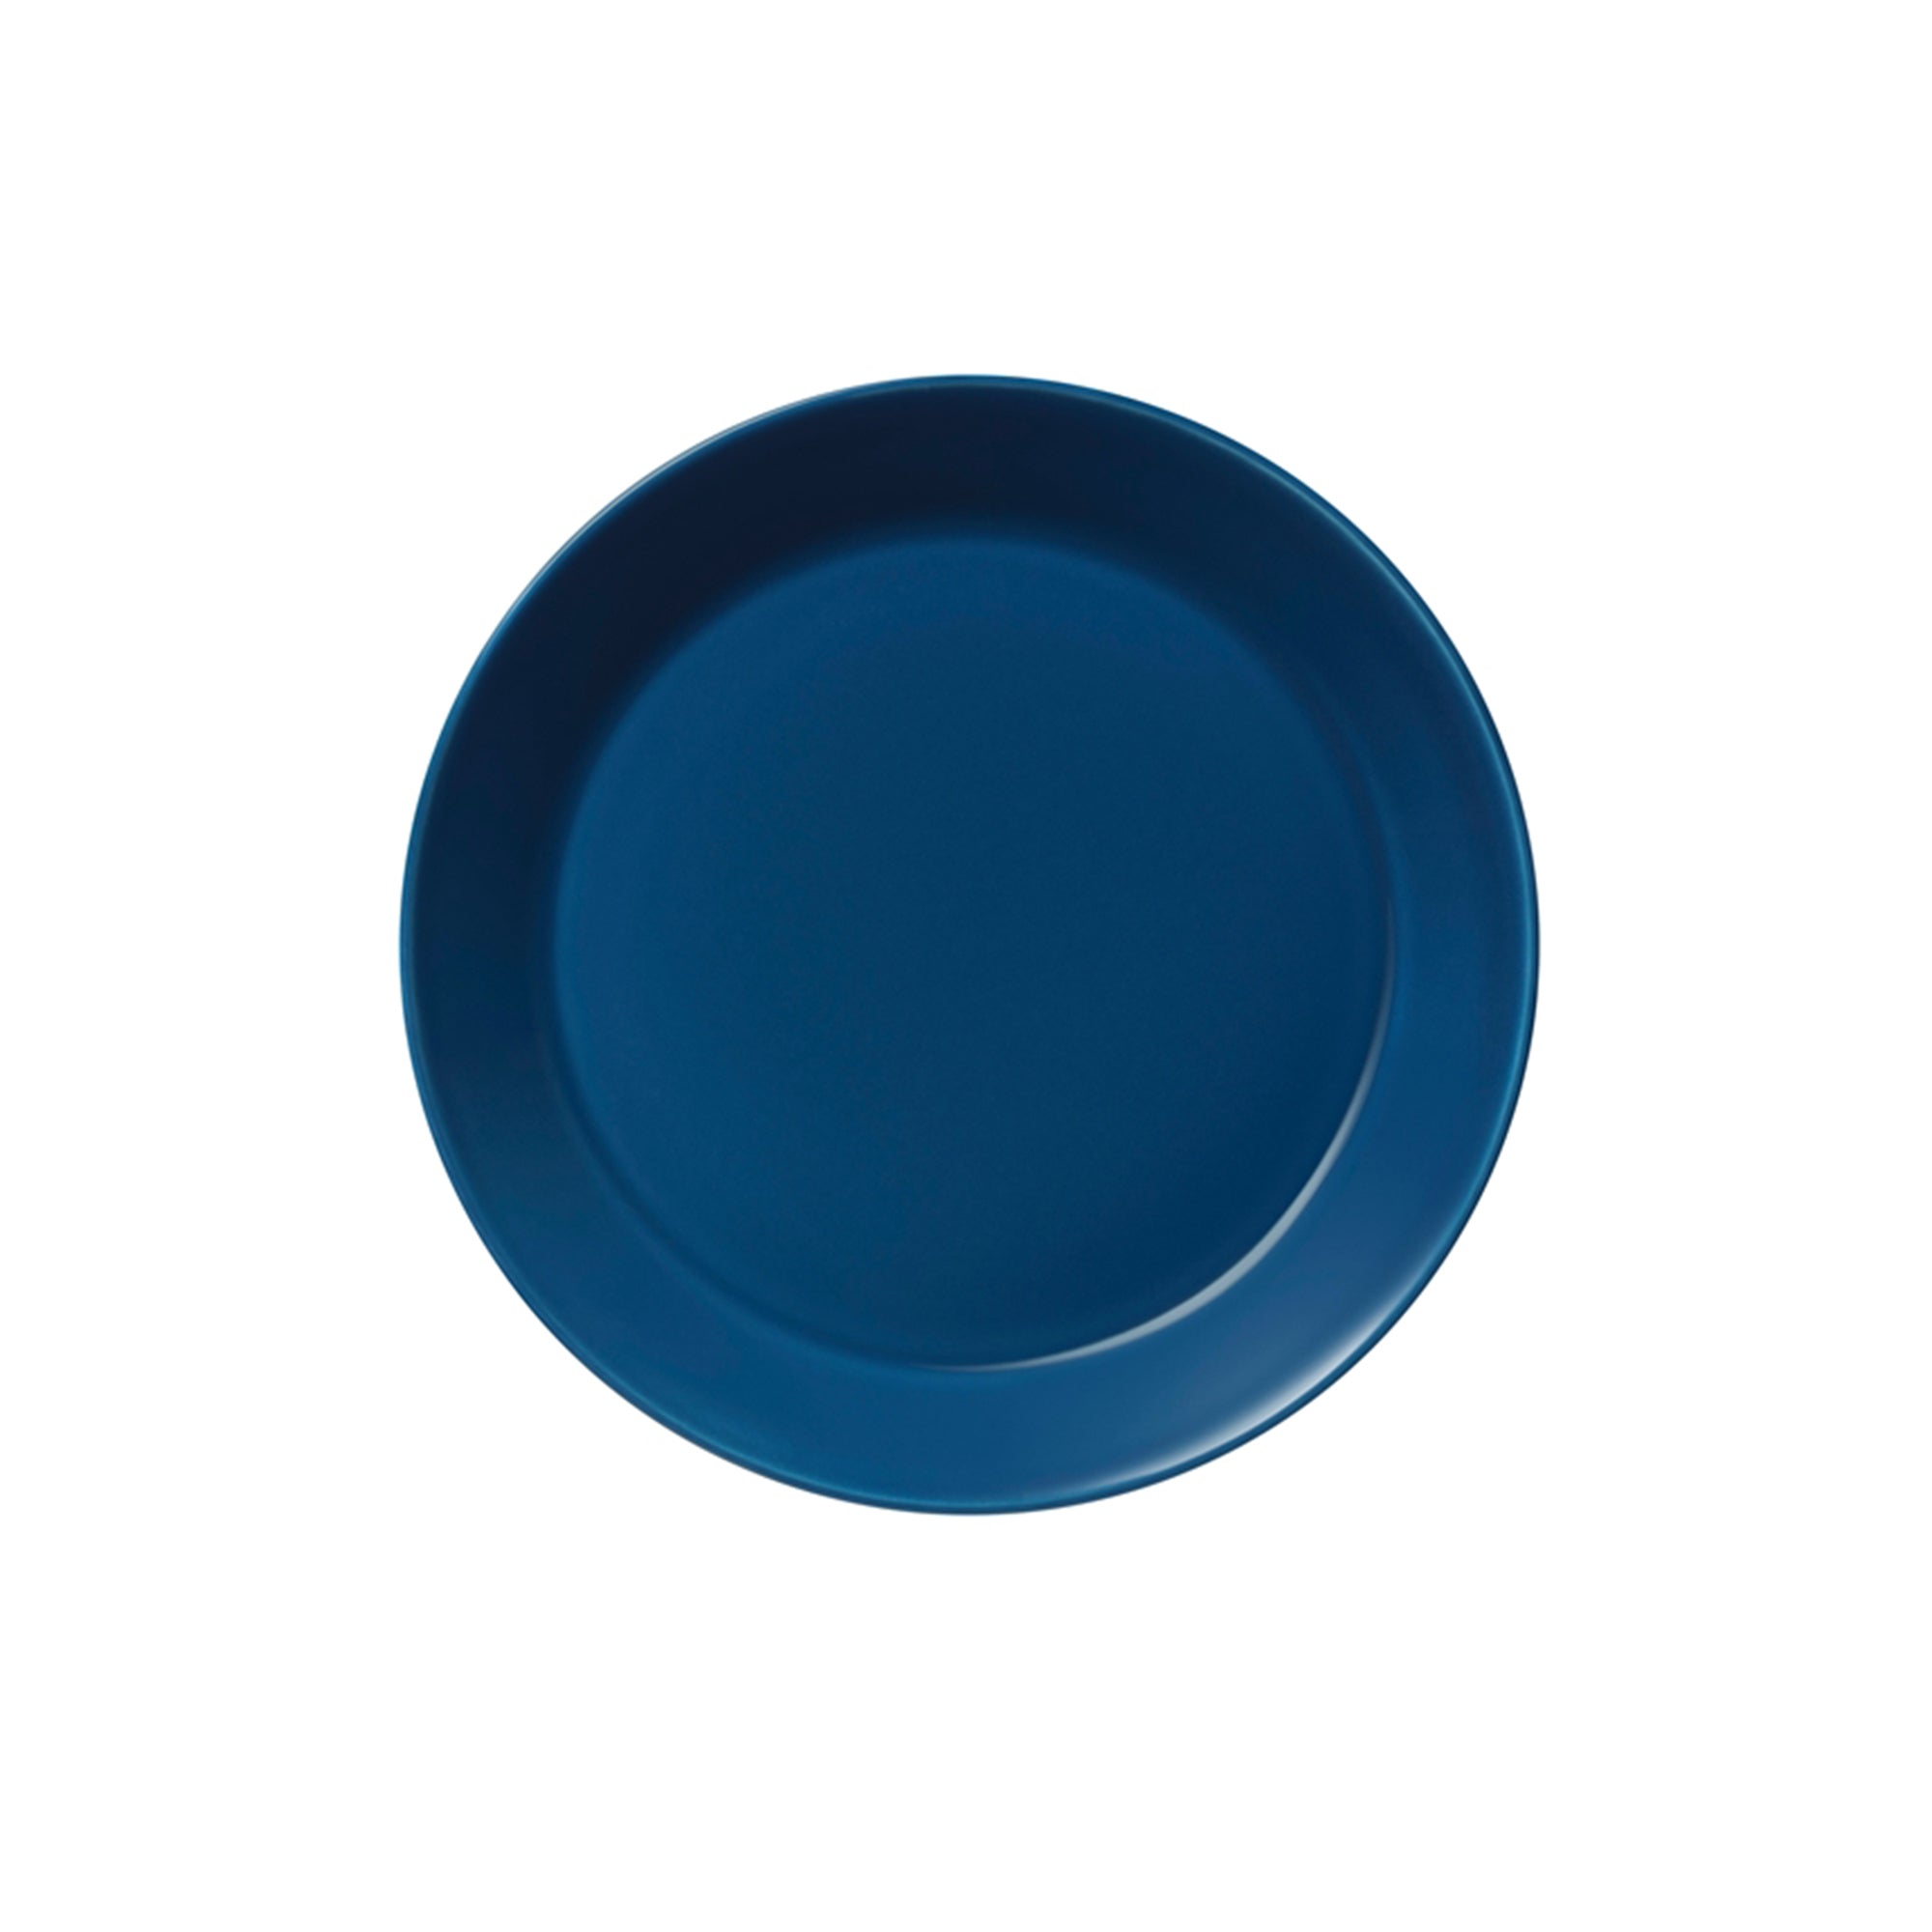 Teema Vintage Blue Salad Plate, 8.25"